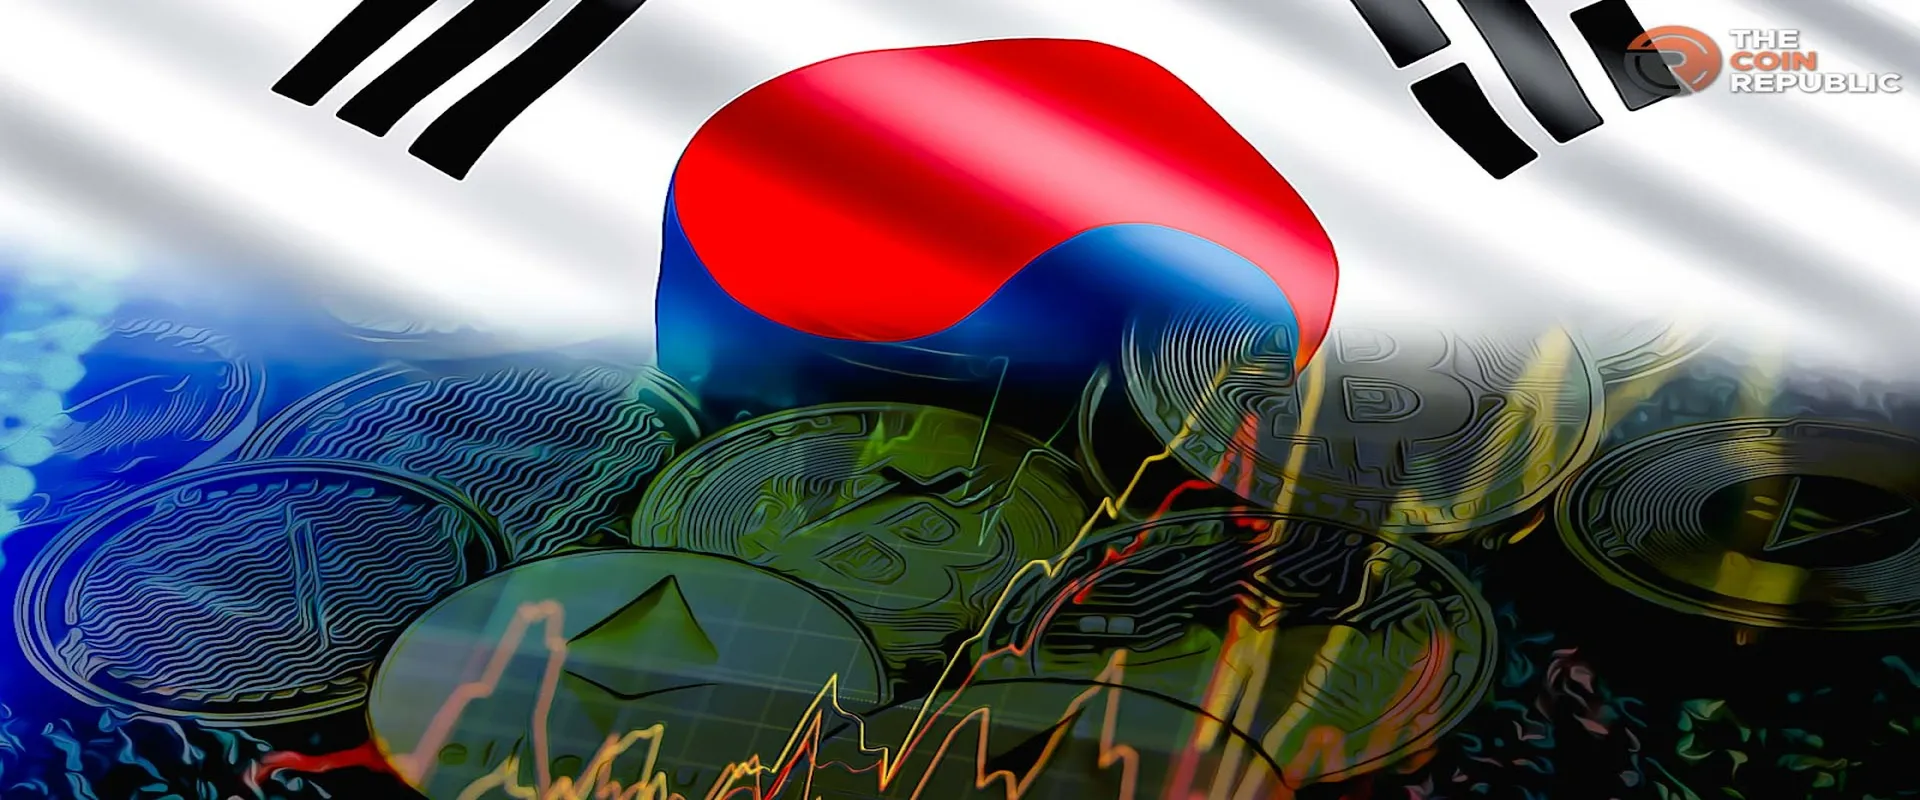 South Korean DA Trading Consolidation: Wemix-Wemade Affect